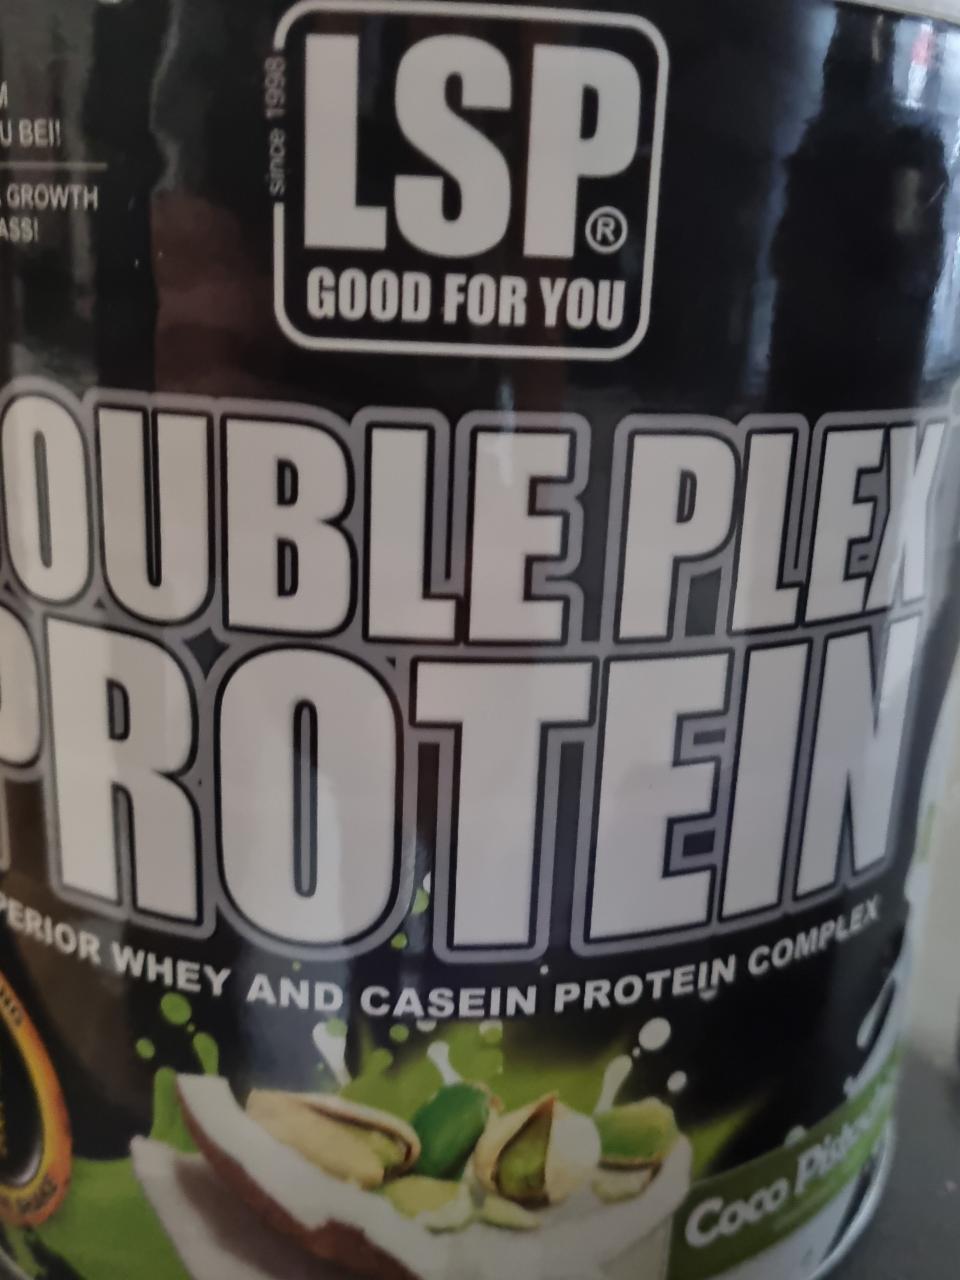 Fotografie - LSP Double plex protein coco pistacio